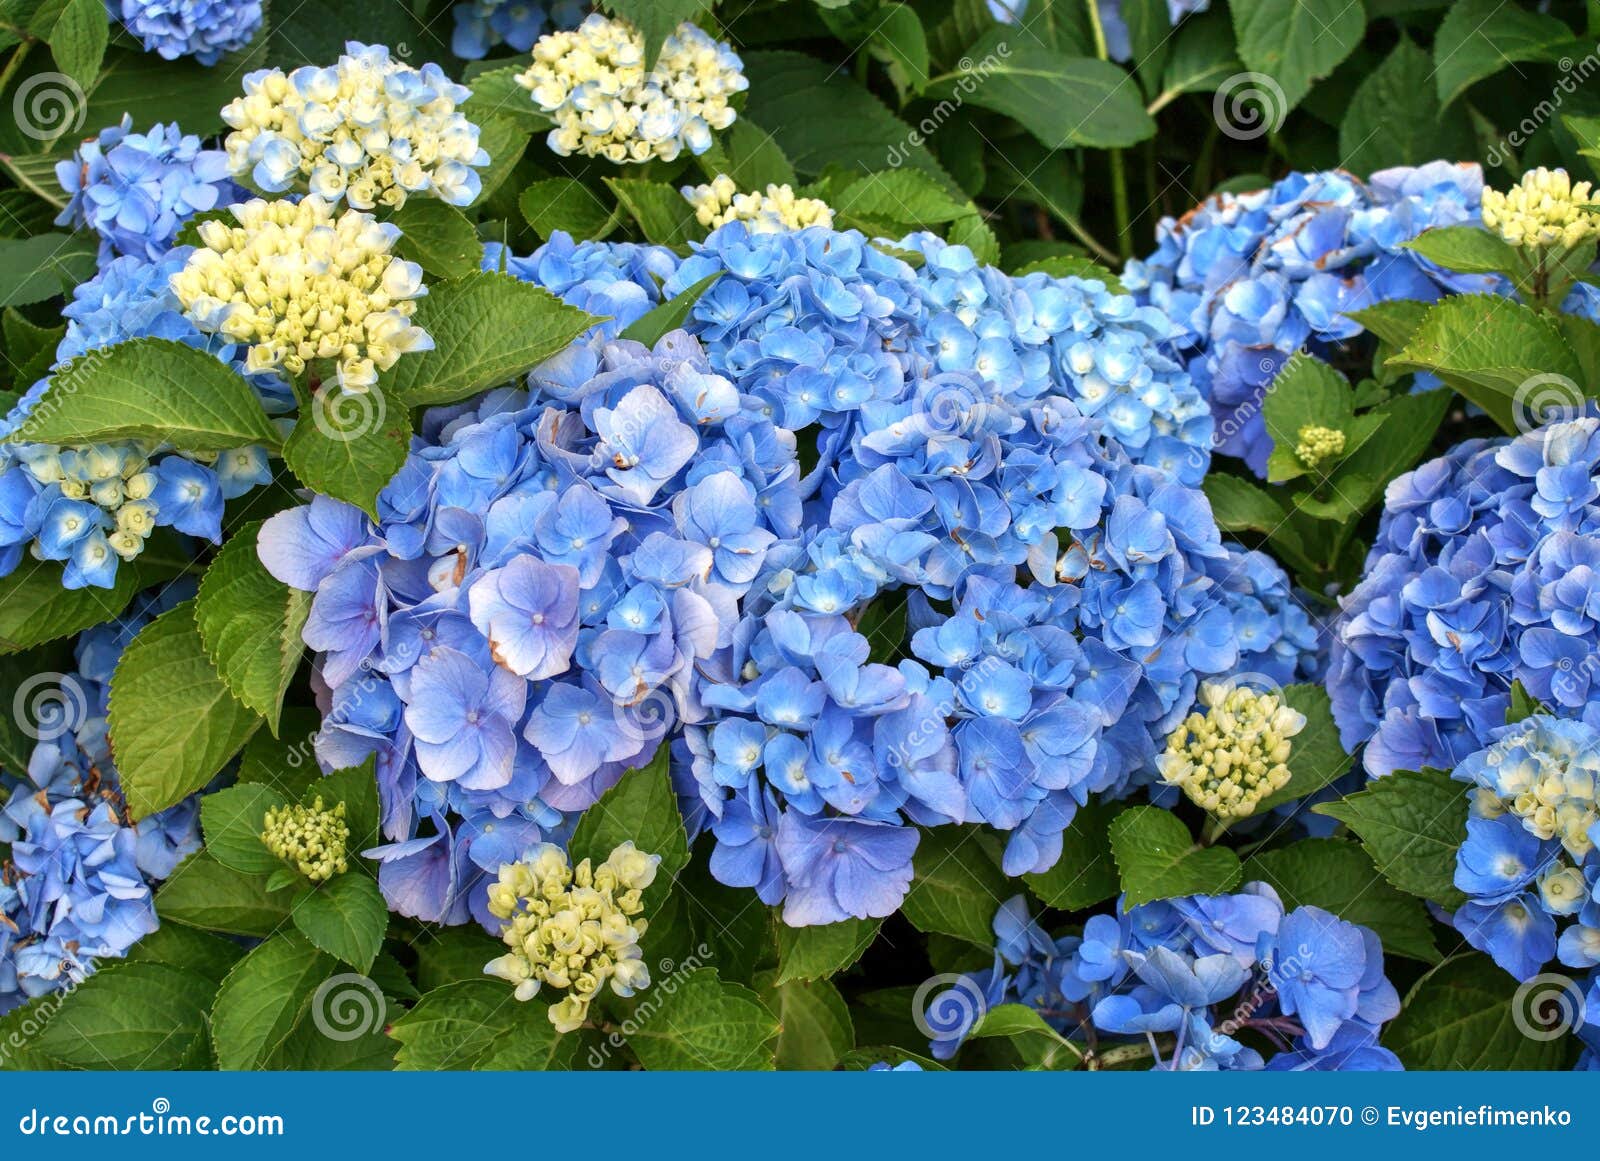 Flores Azules De La Hortensia Con Las Hojas Verdes Foto de archivo - Imagen  de azul, cierre: 123484070